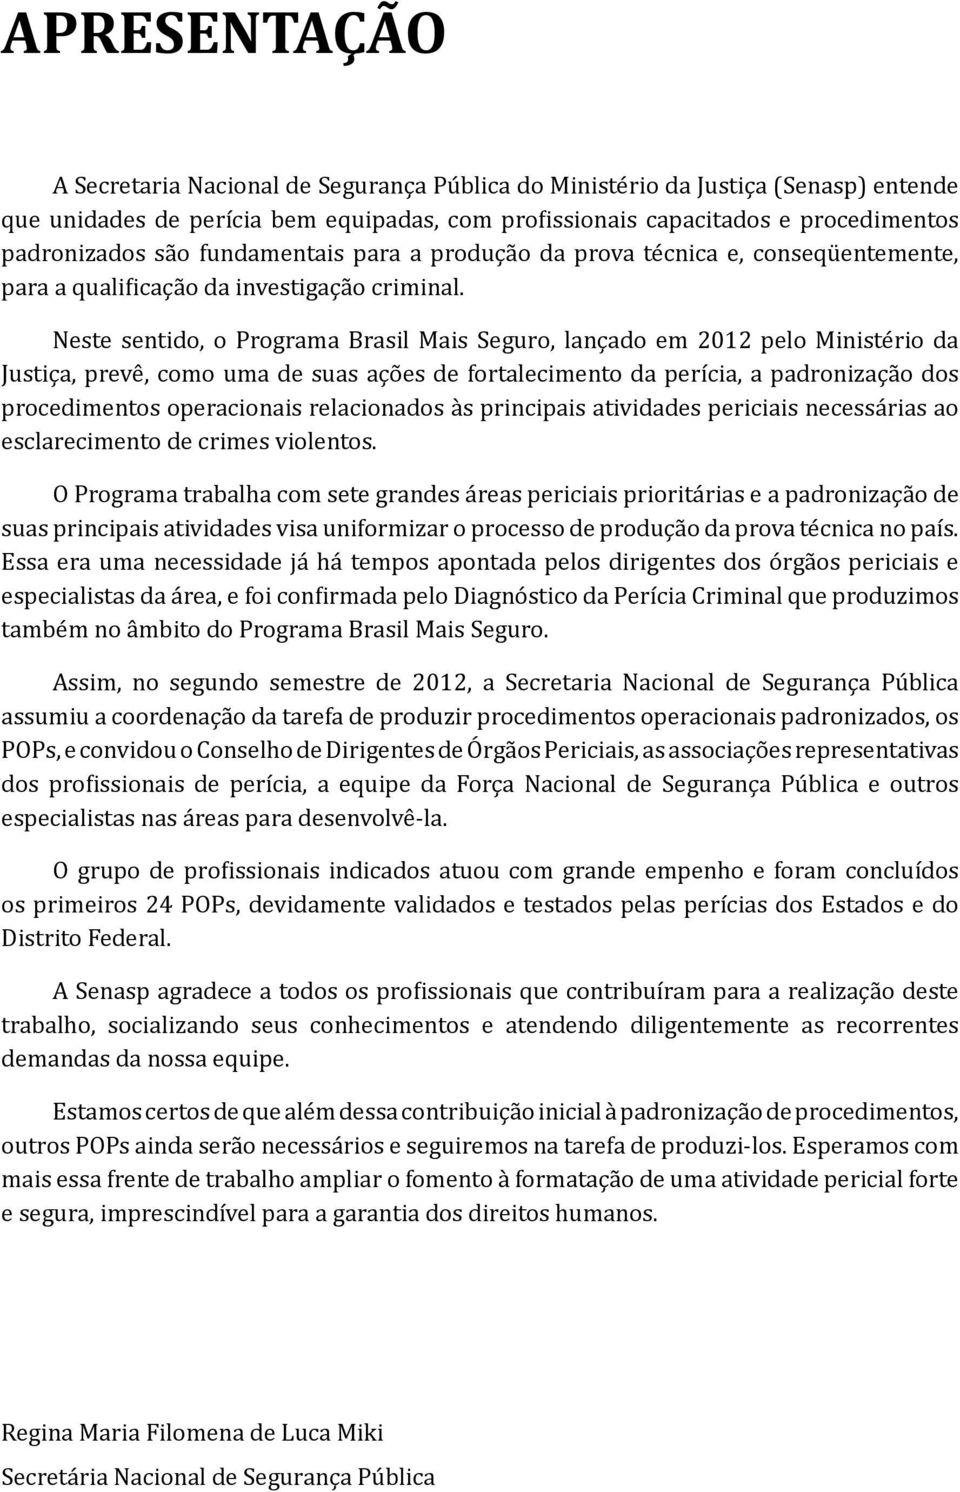 Neste sentido, o Programa Brasil Mais Seguro, lançado em 2012 pelo Ministério da Justiça, prevê, como uma de suas ações de fortalecimento da perícia, a padronização dos procedimentos operacionais